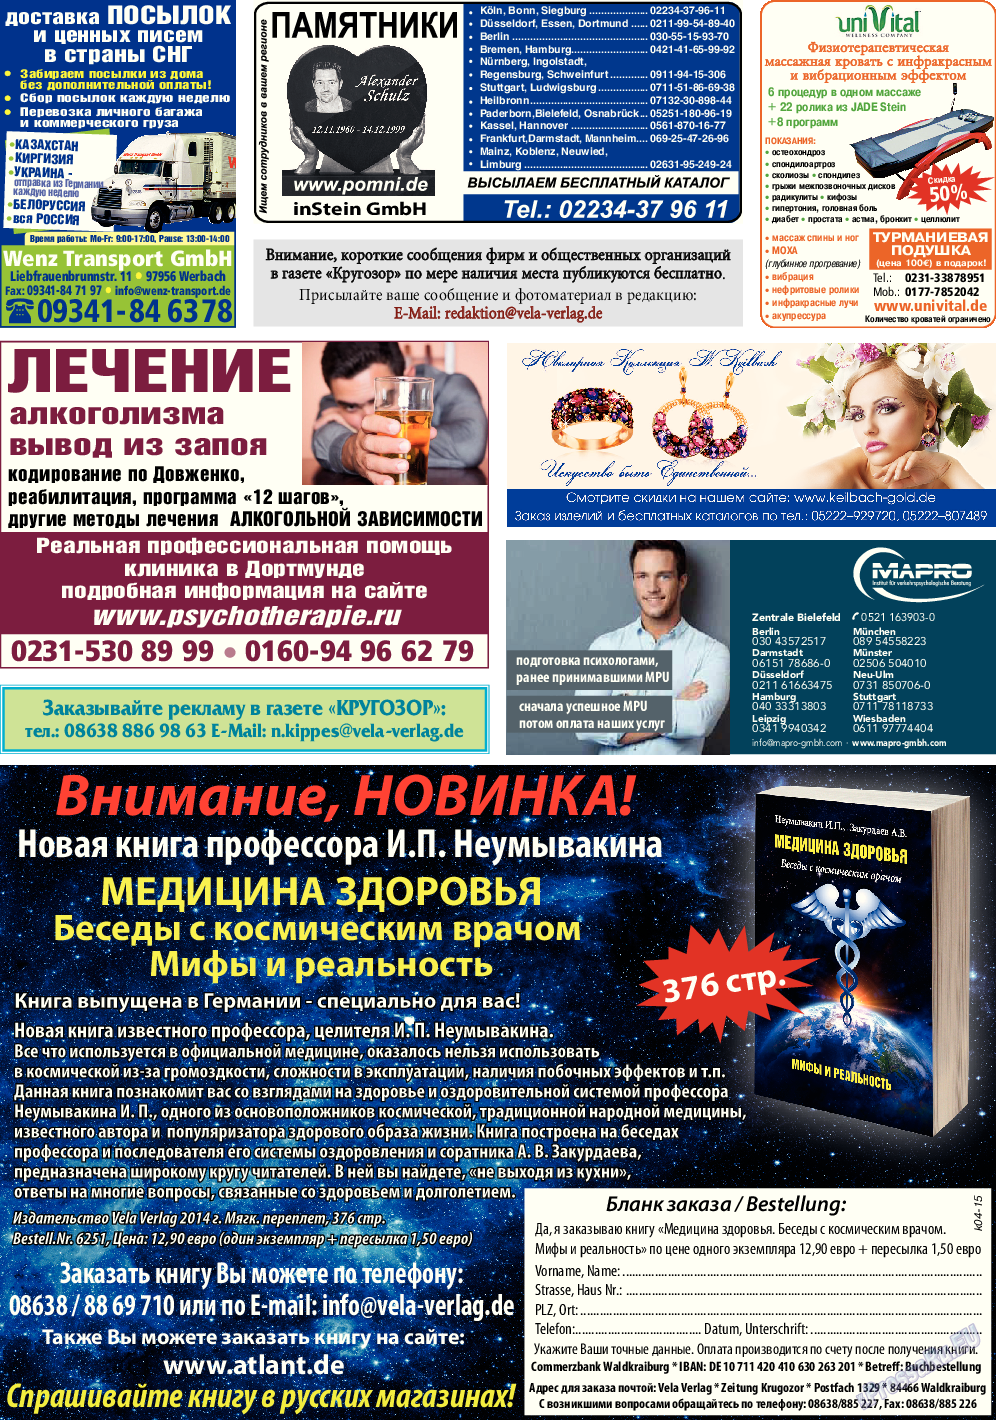 Кругозор (газета). 2015 год, номер 4, стр. 32